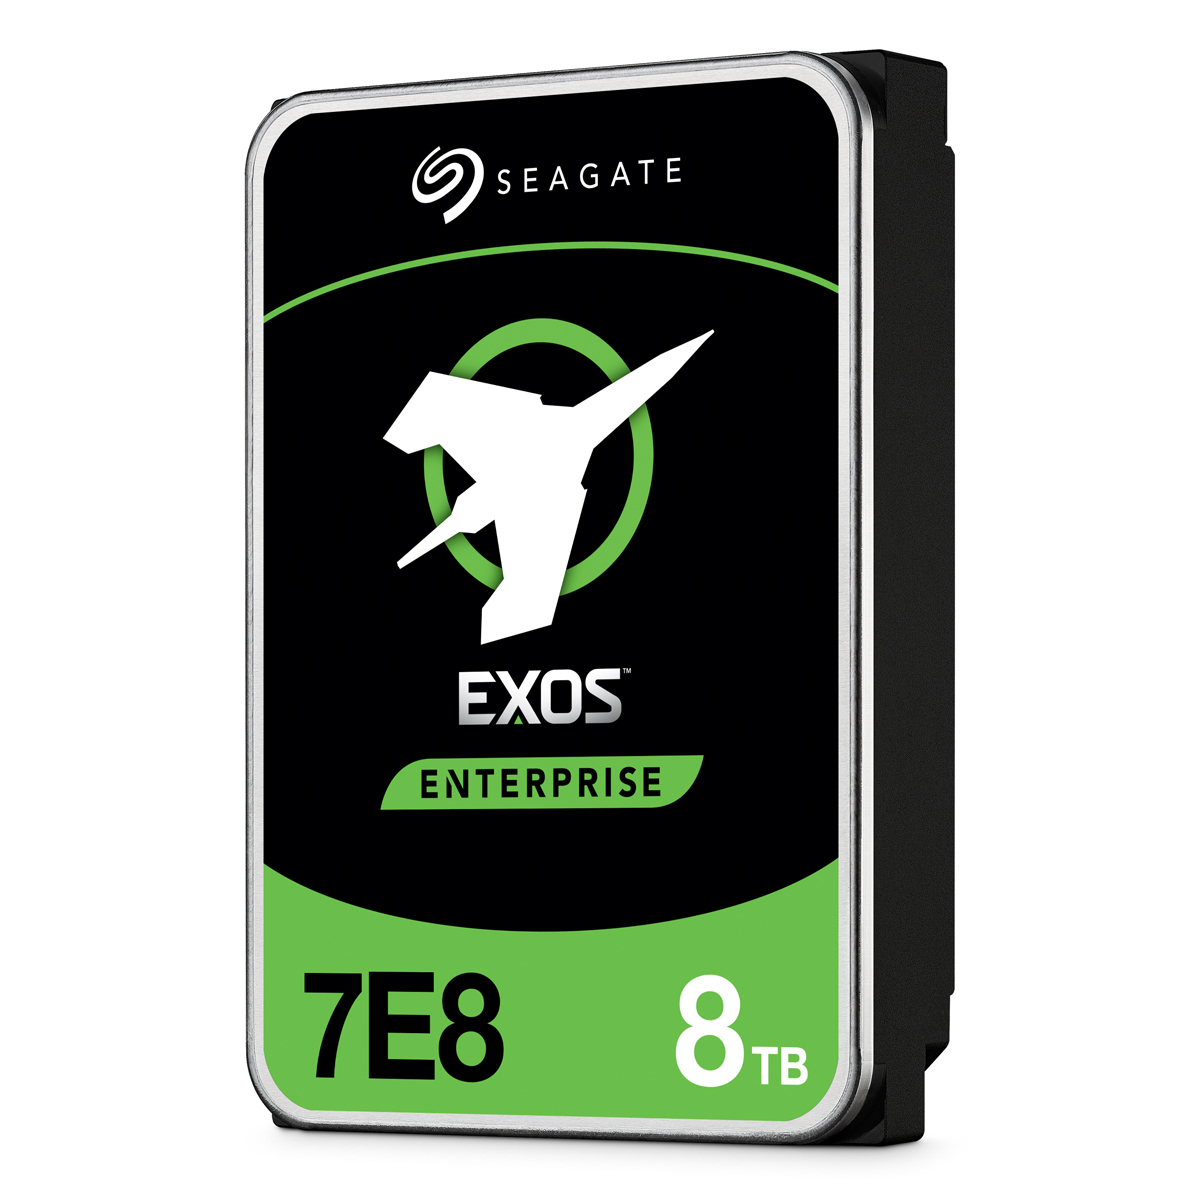 Seagate Exos 7E8 512e 8TB 3.5 Zoll SATA 6GB/s - interne Enterprise Festplatte (OEM) von Seagate